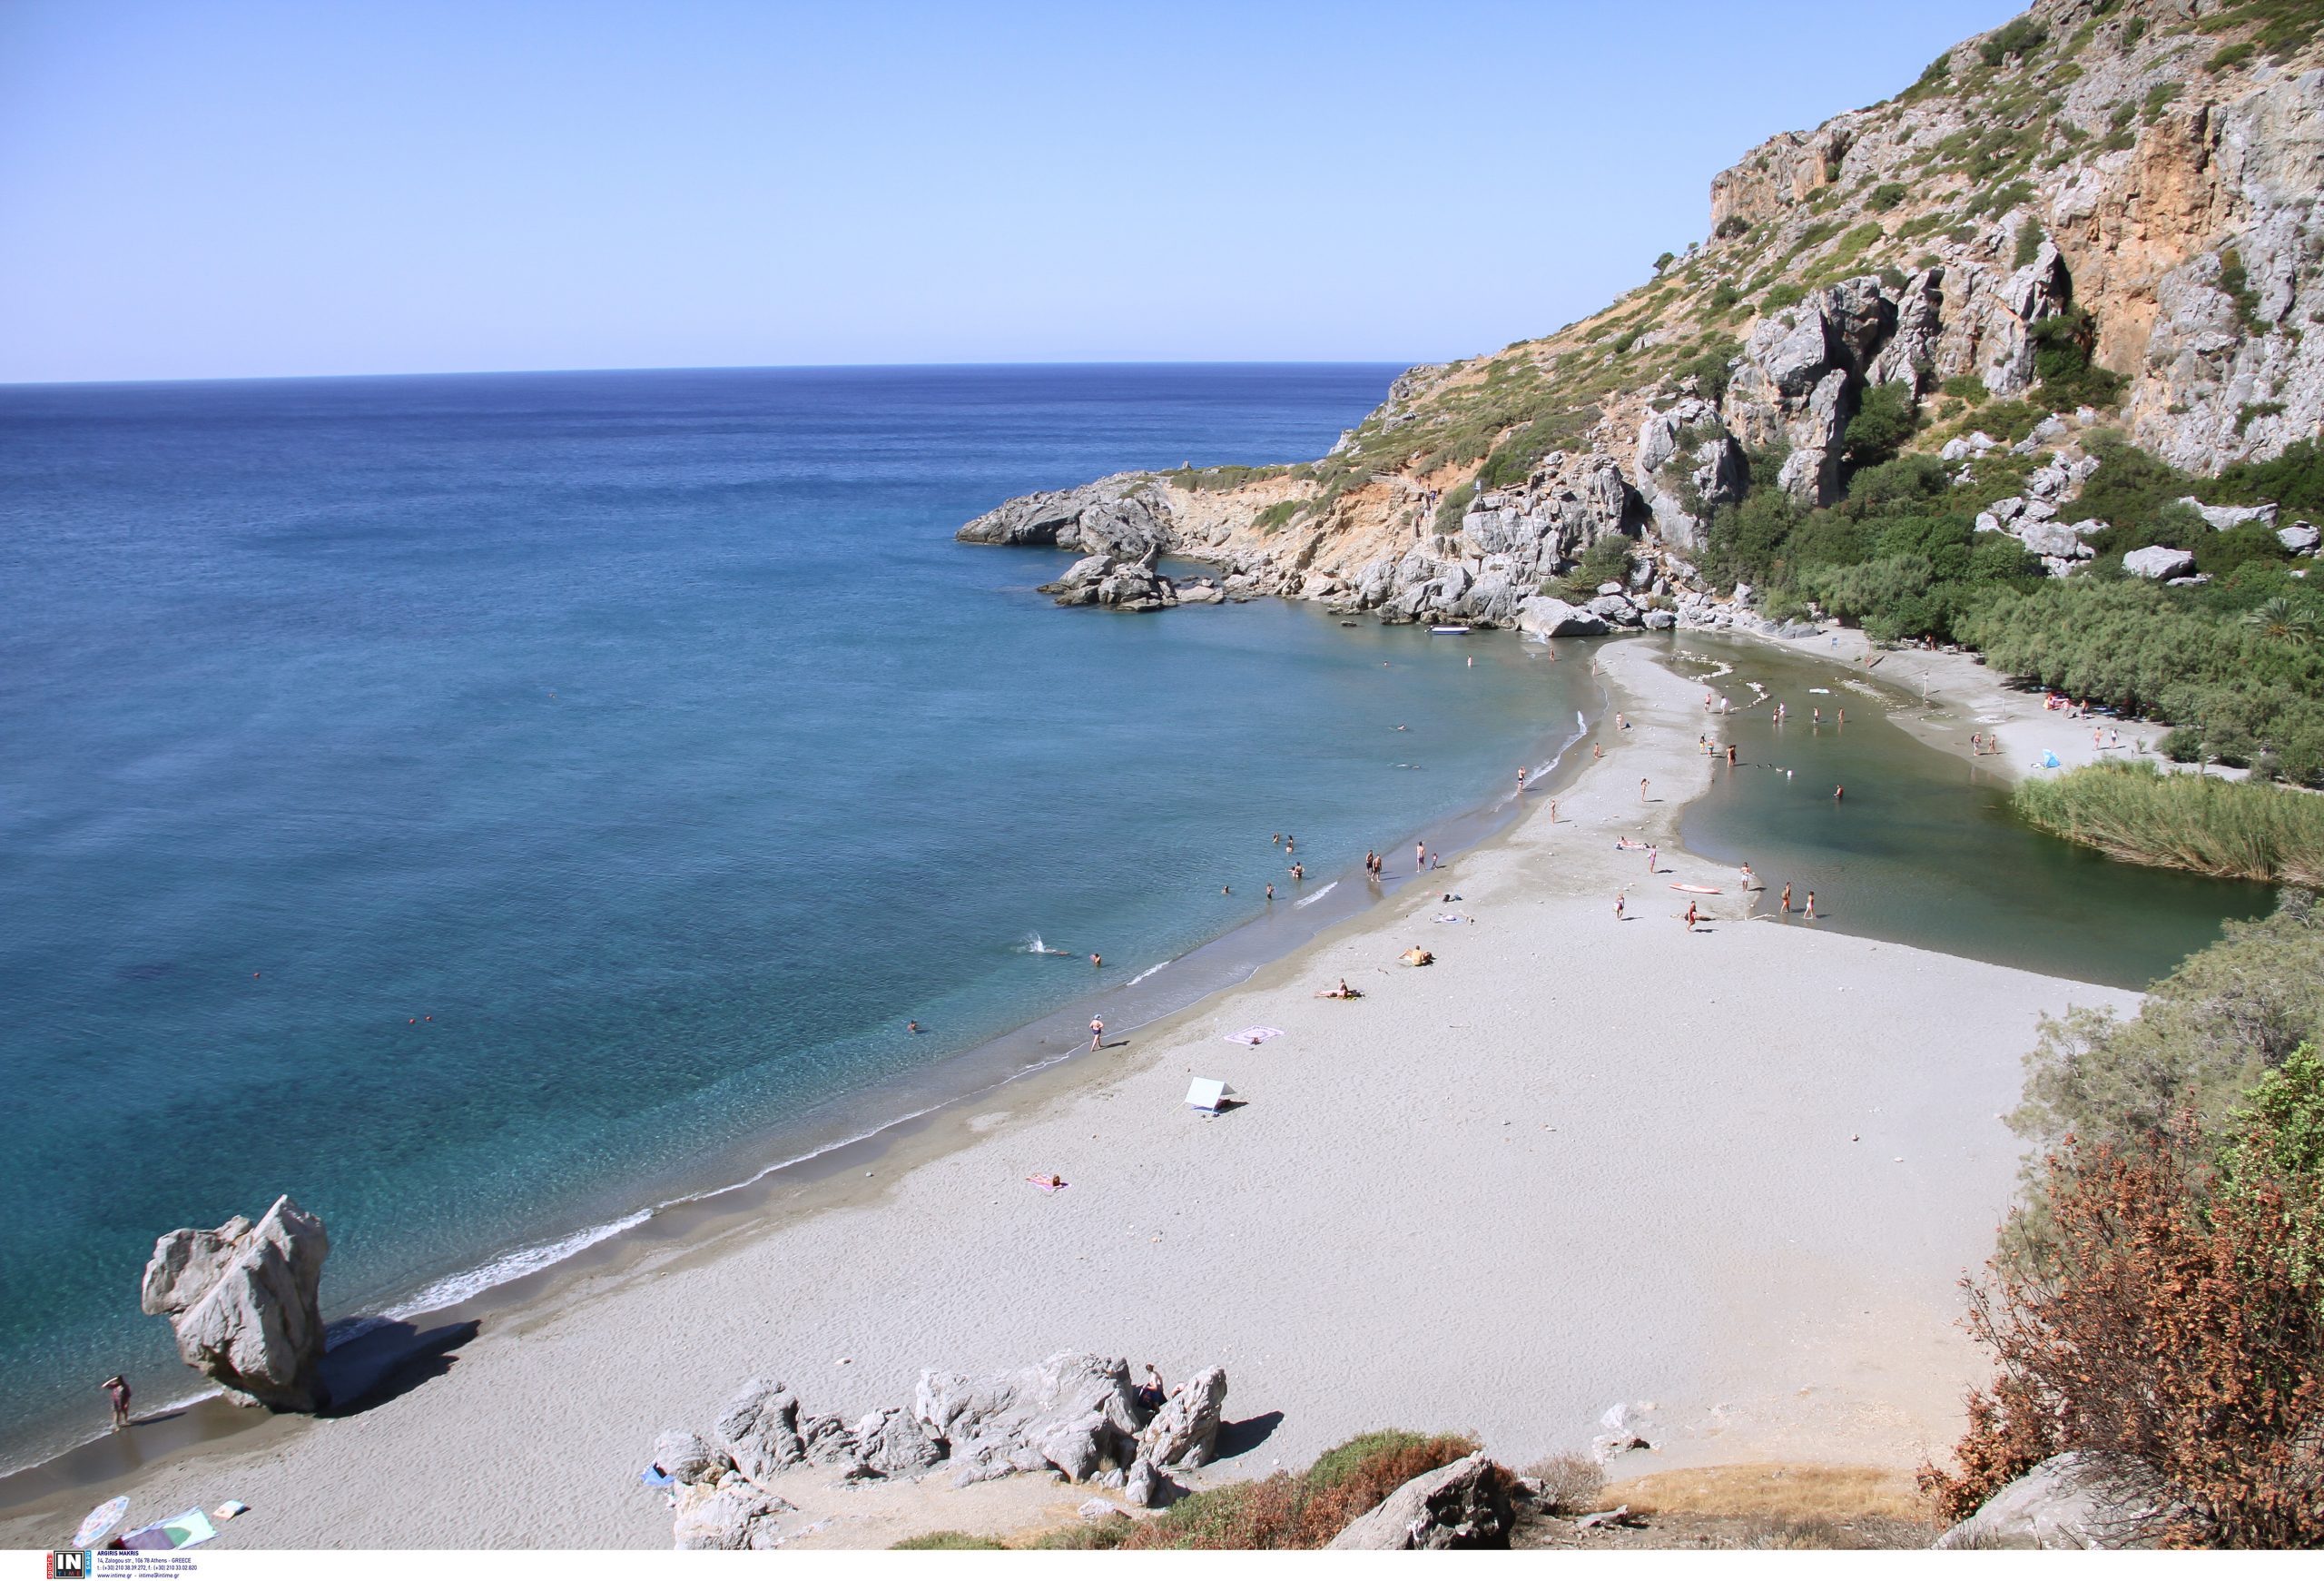 Πρέβελη: Η ιδιαίτερη παραλία της Κρήτης που η φήμη της έχει περάσει τα ελληνικά σύνορα